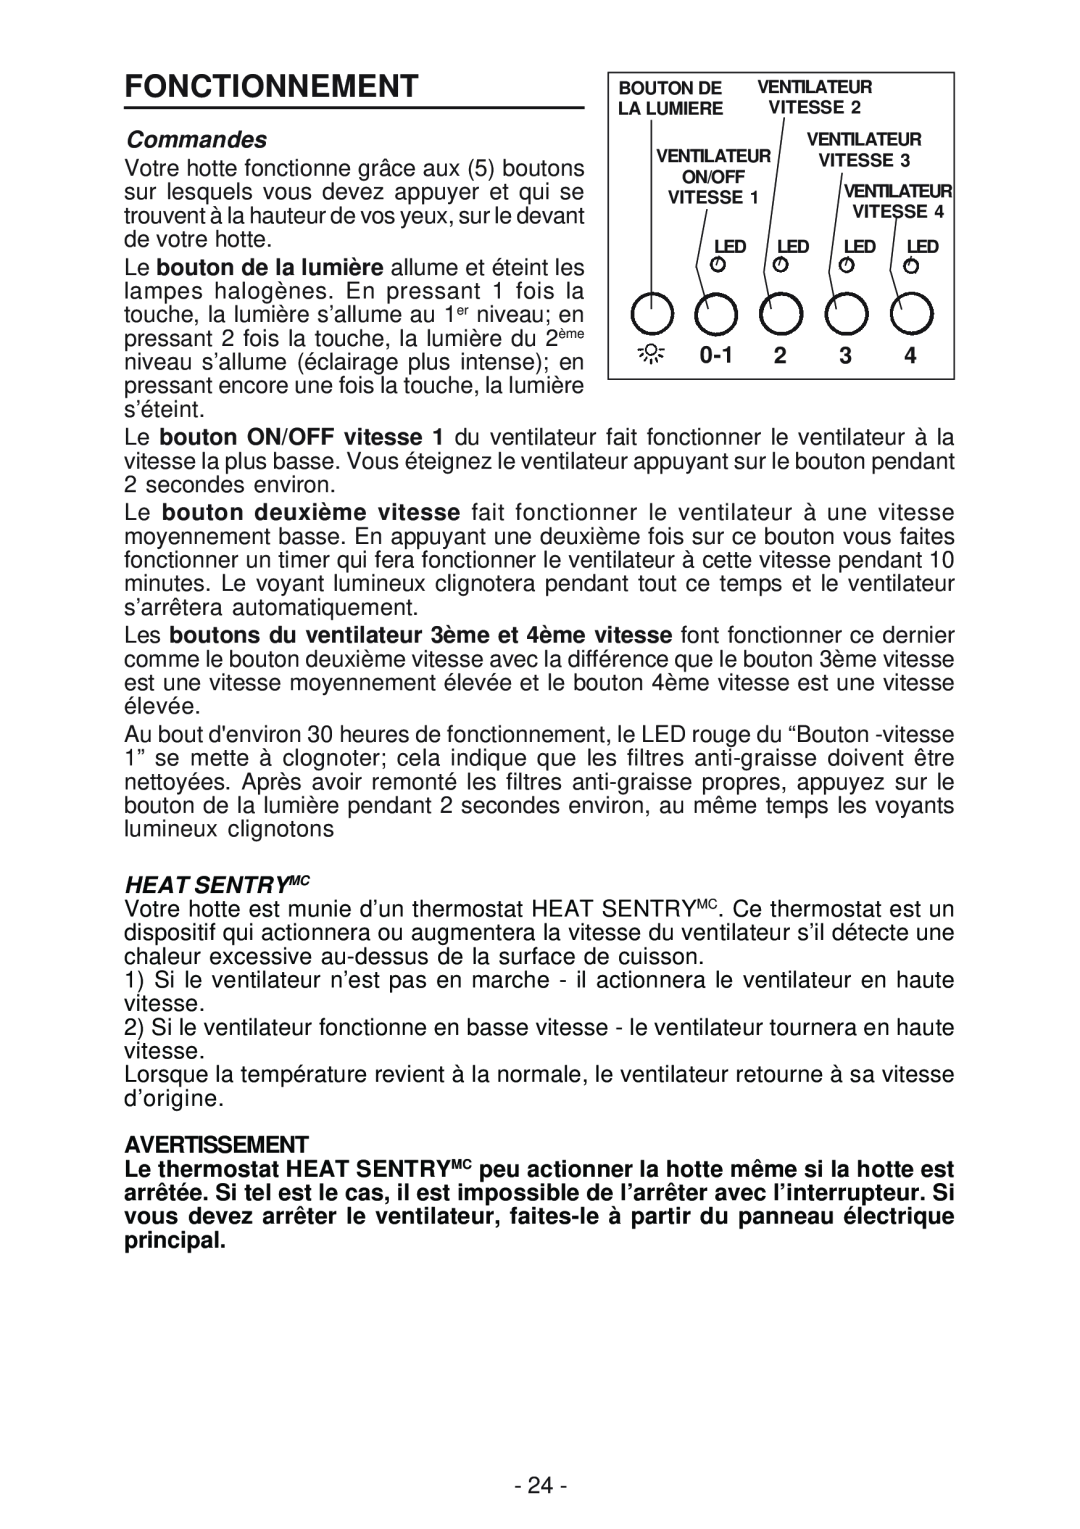 Best IS170 manual Fonctionnement, Commandes, Heat Sentrymc, Avertissement 